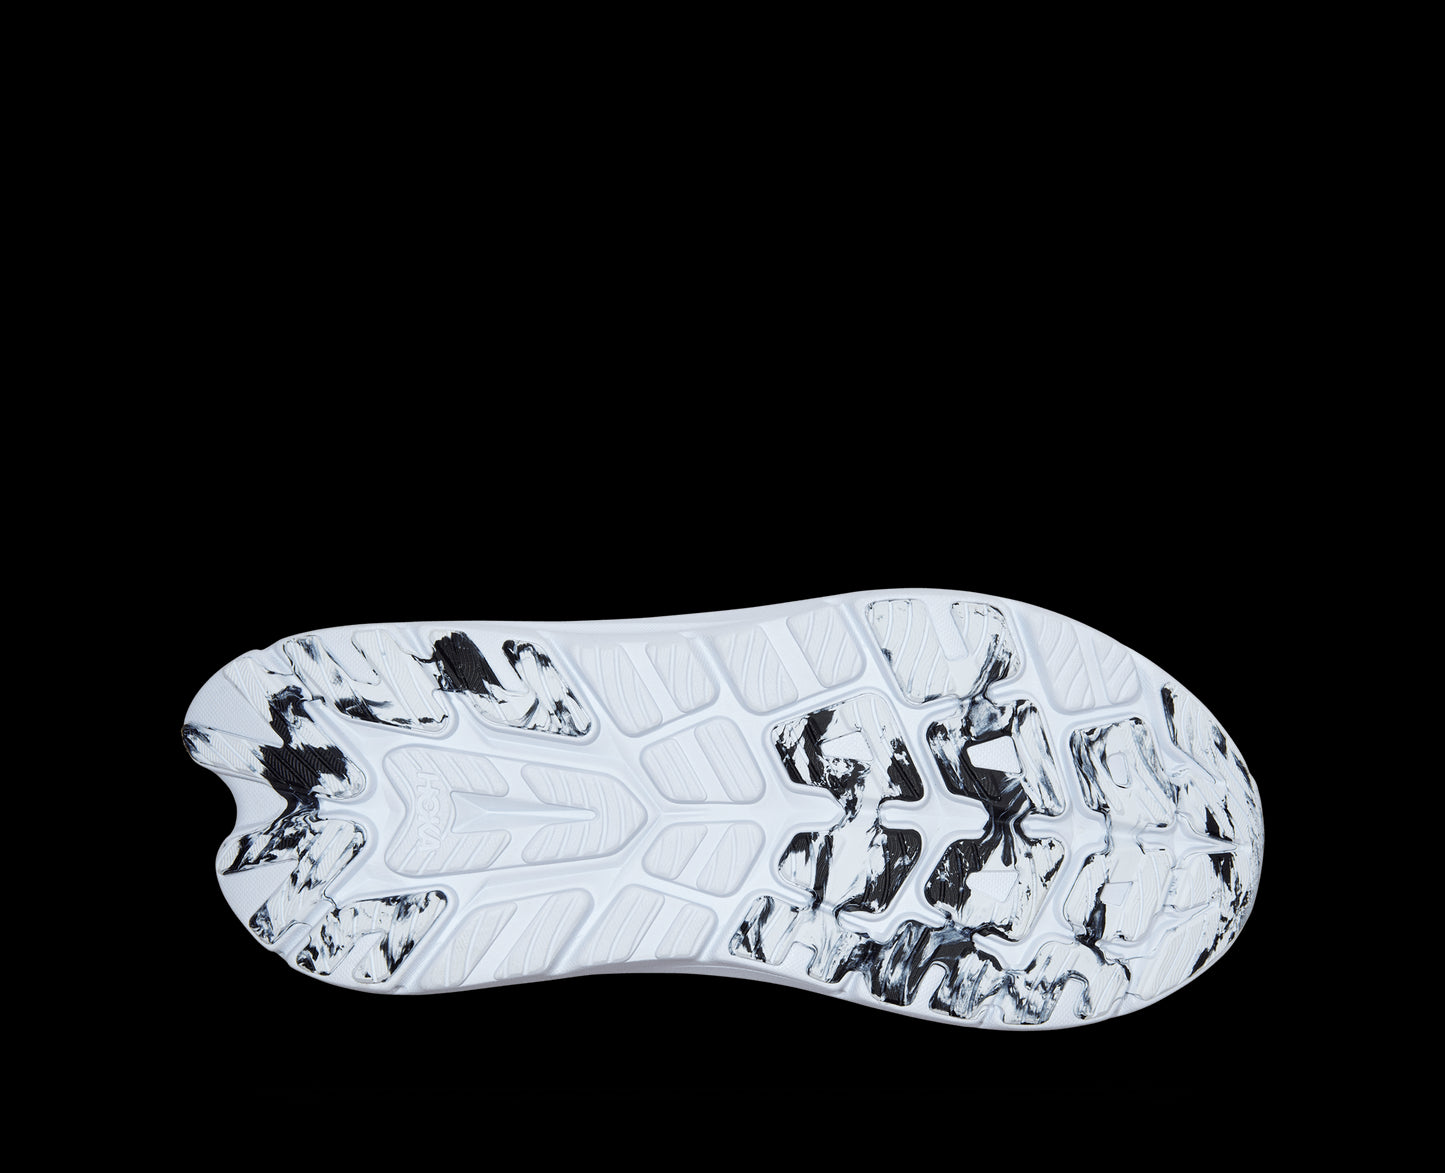 Hoka Kawana - נעלי ספורט נשים הוקה קאוואנה בצבע שחור/לבן